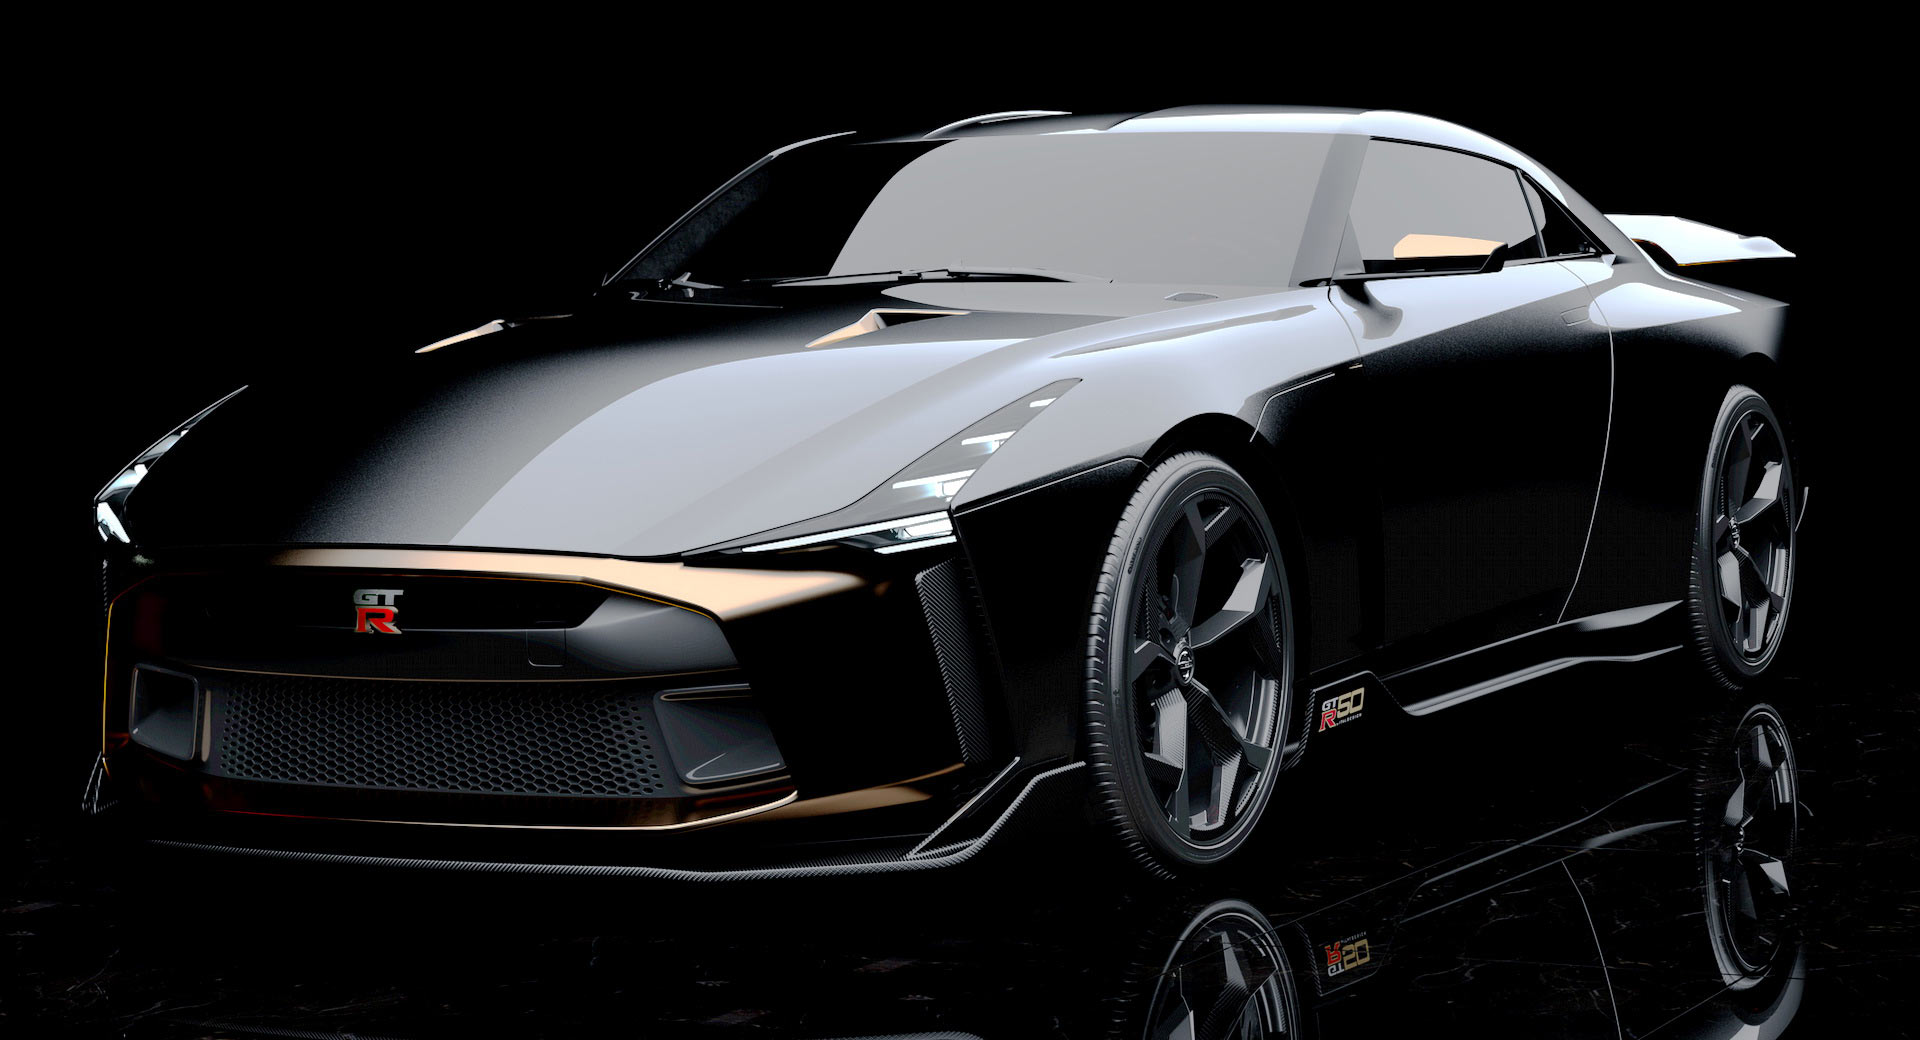 Nissan Skyline GT-R R36 Concept GTA 5 